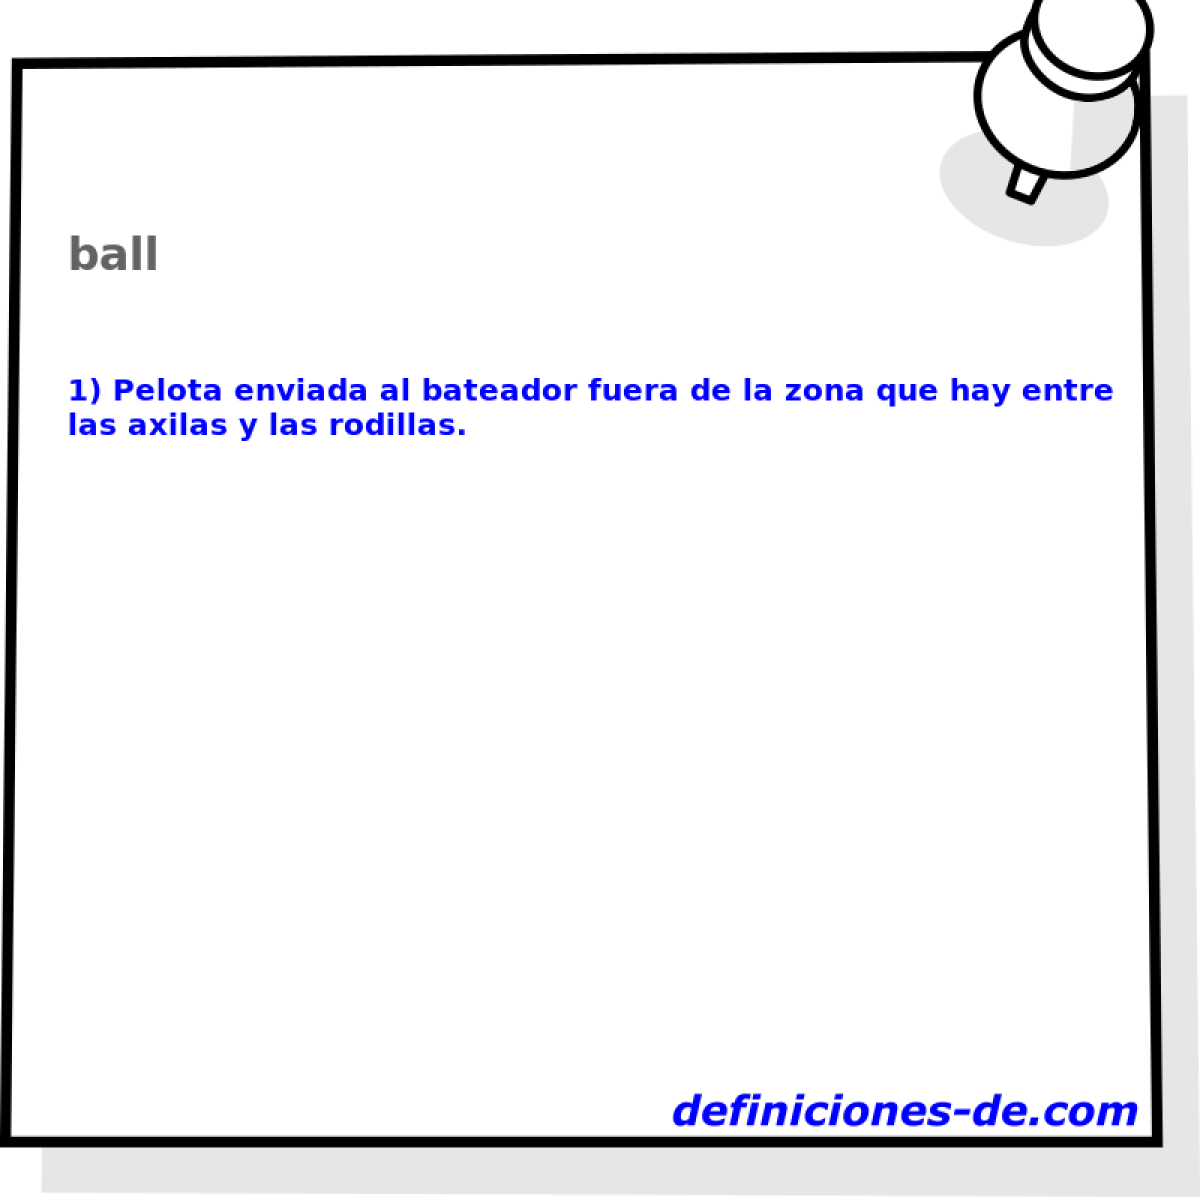 ball 